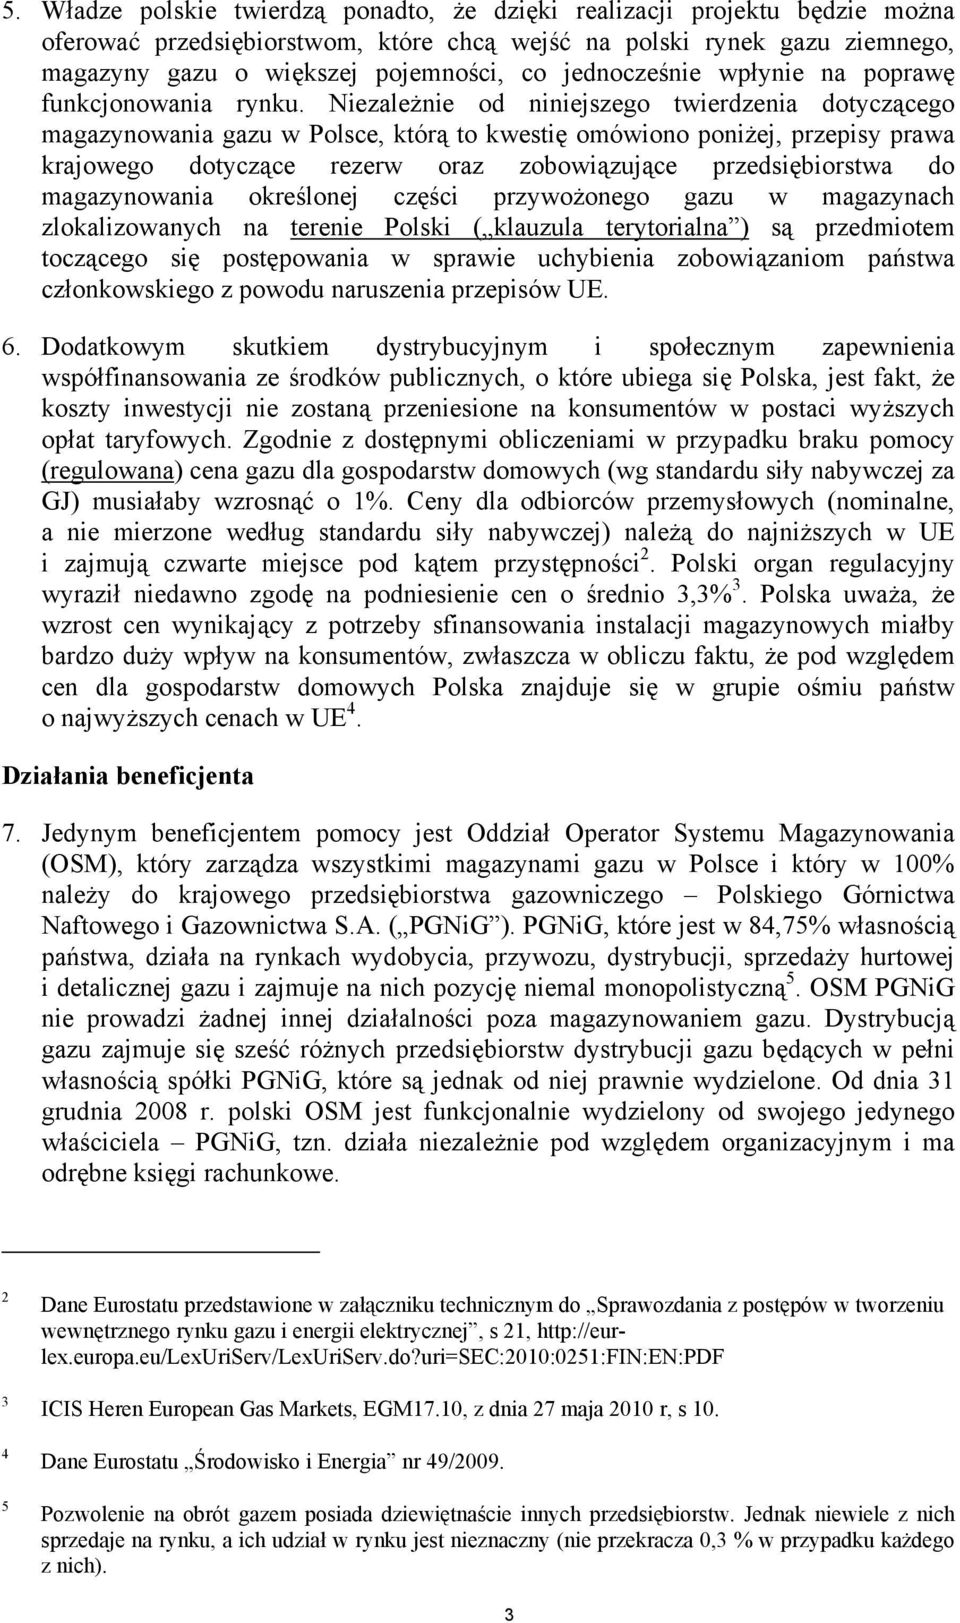 Niezależnie od niniejszego twierdzenia dotyczącego magazynowania gazu w Polsce, którą to kwestię omówiono poniżej, przepisy prawa krajowego dotyczące rezerw oraz zobowiązujące przedsiębiorstwa do